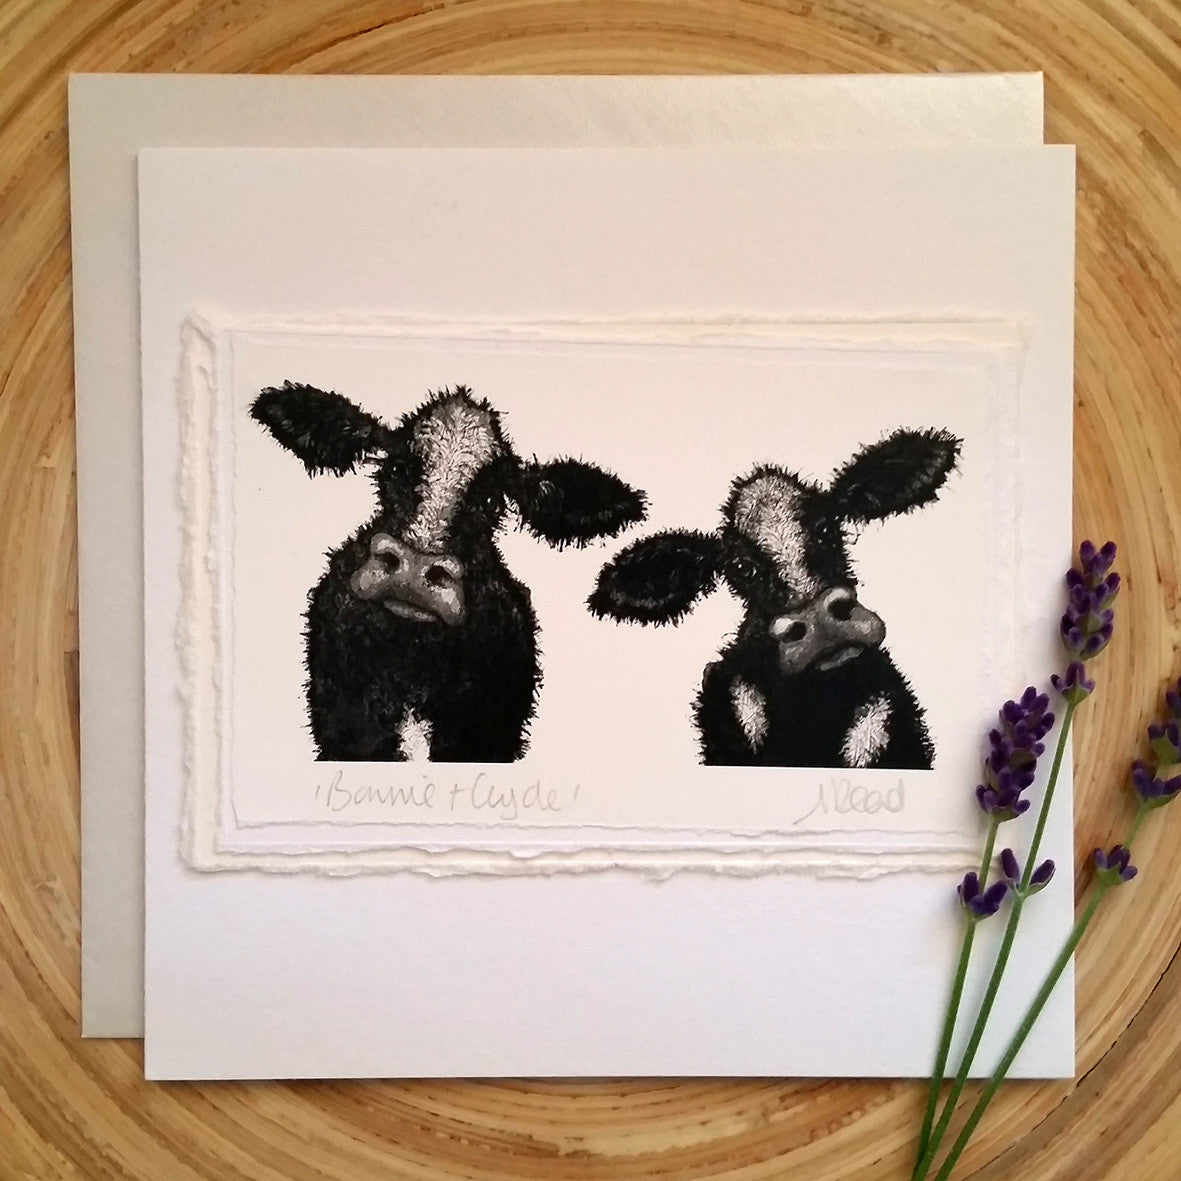 Bonnie & Clyde, Cows - Greetings Card